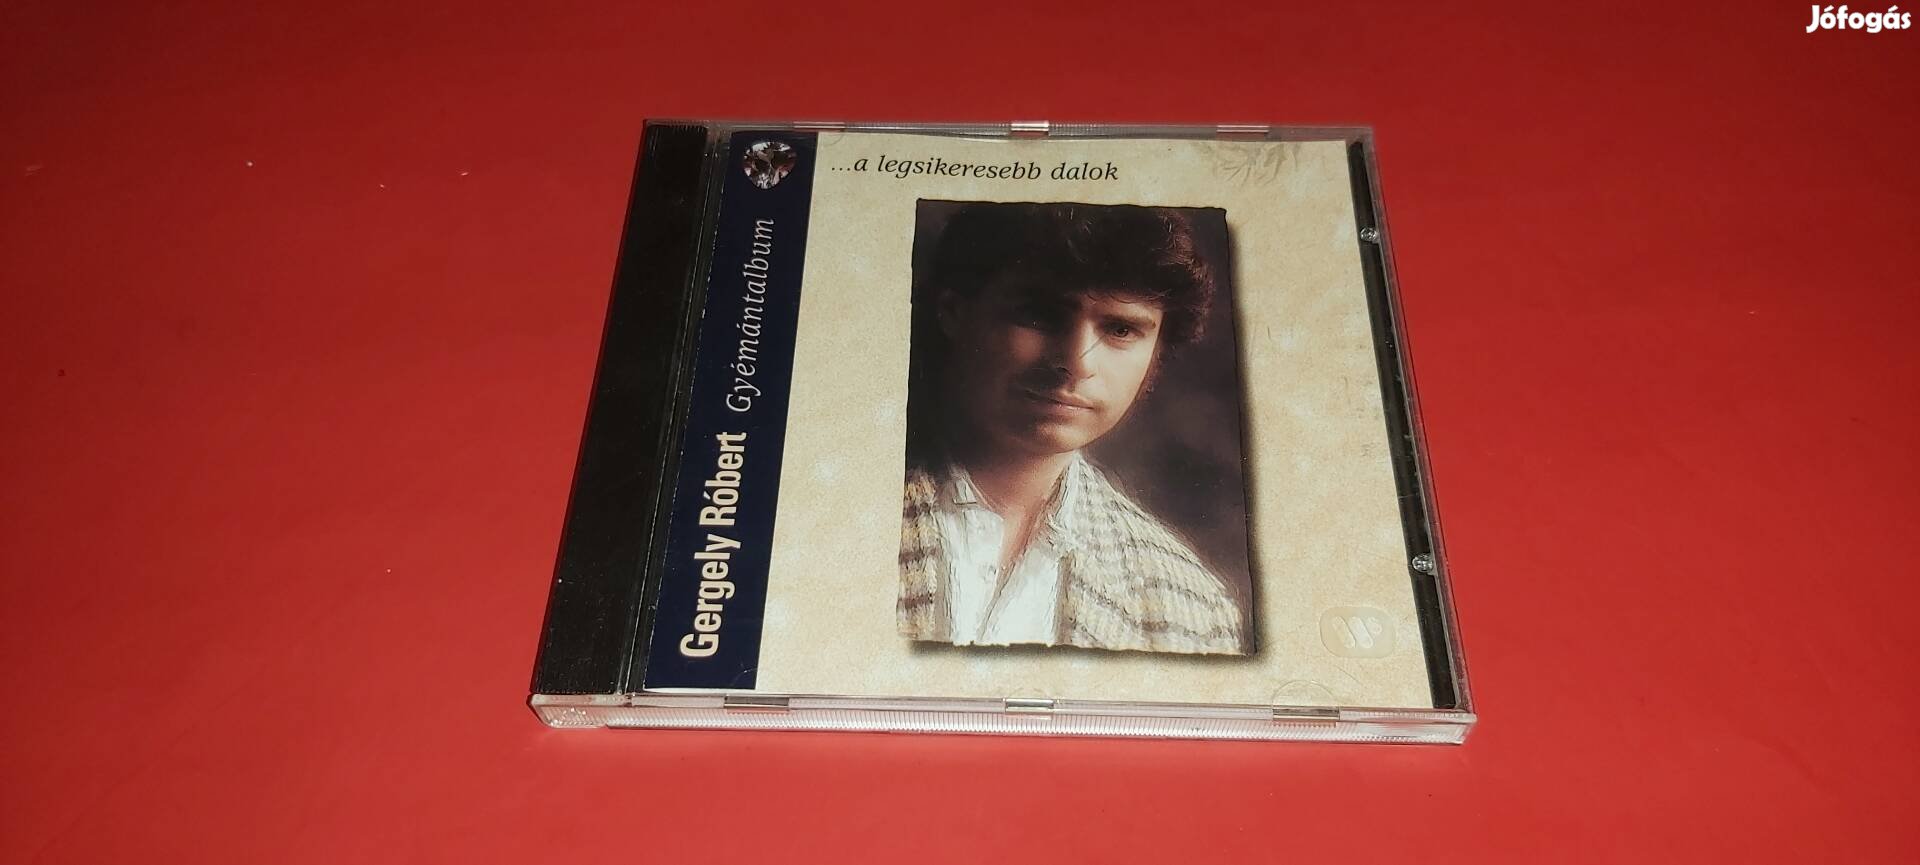 Gergely Róbert Gyémánt album Cd 1996